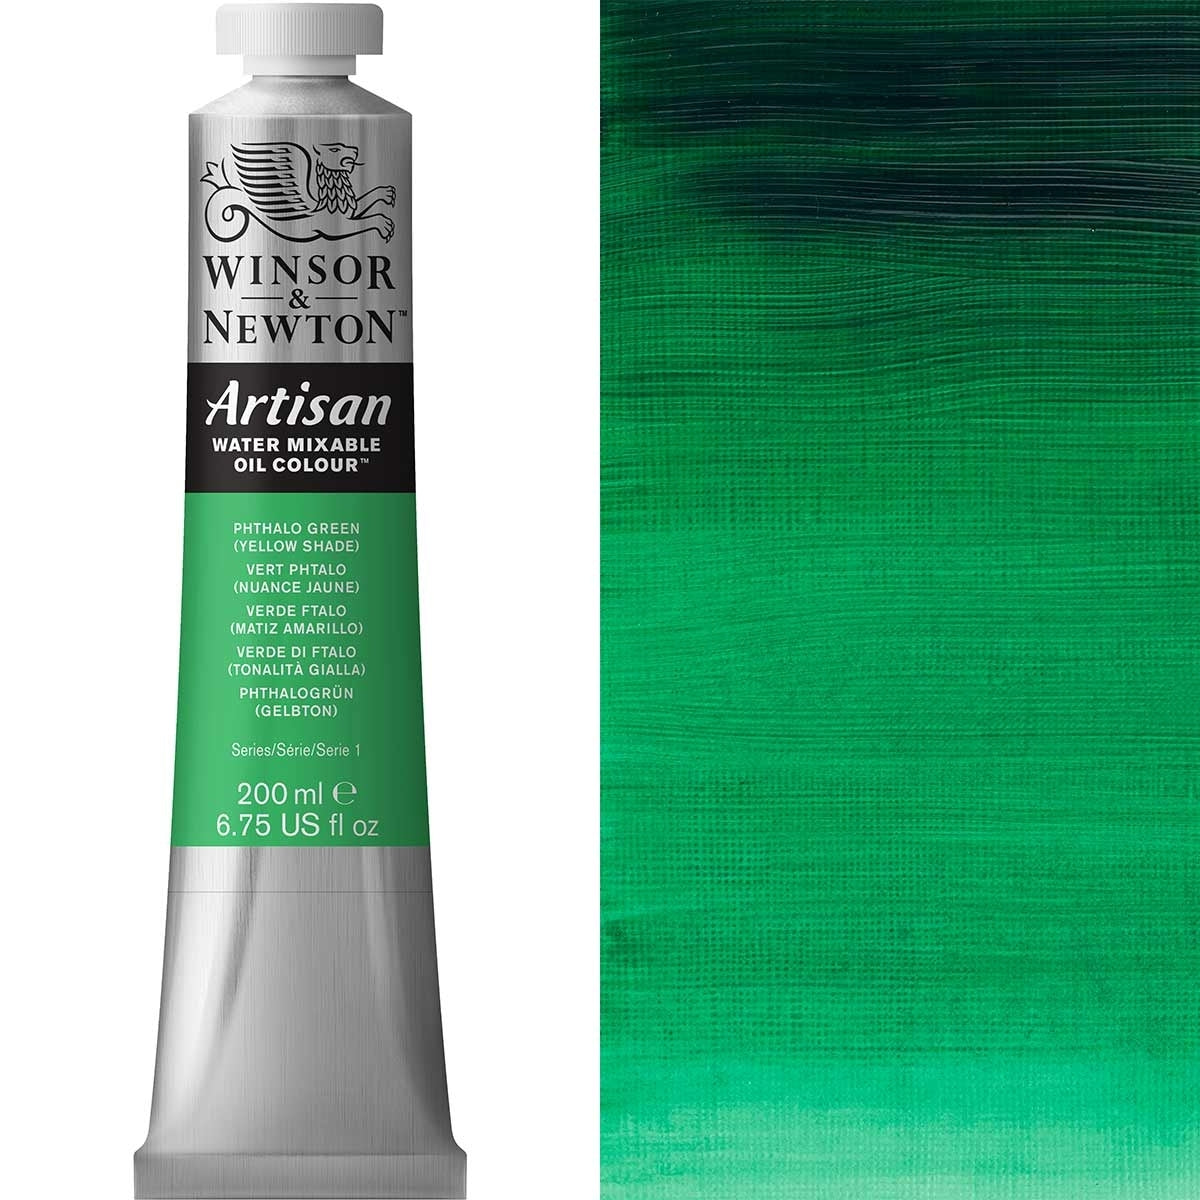 Winsor e Newton - Watermixable di colore olio artigianale - 200 ml - tonalità gialla verde phthalo